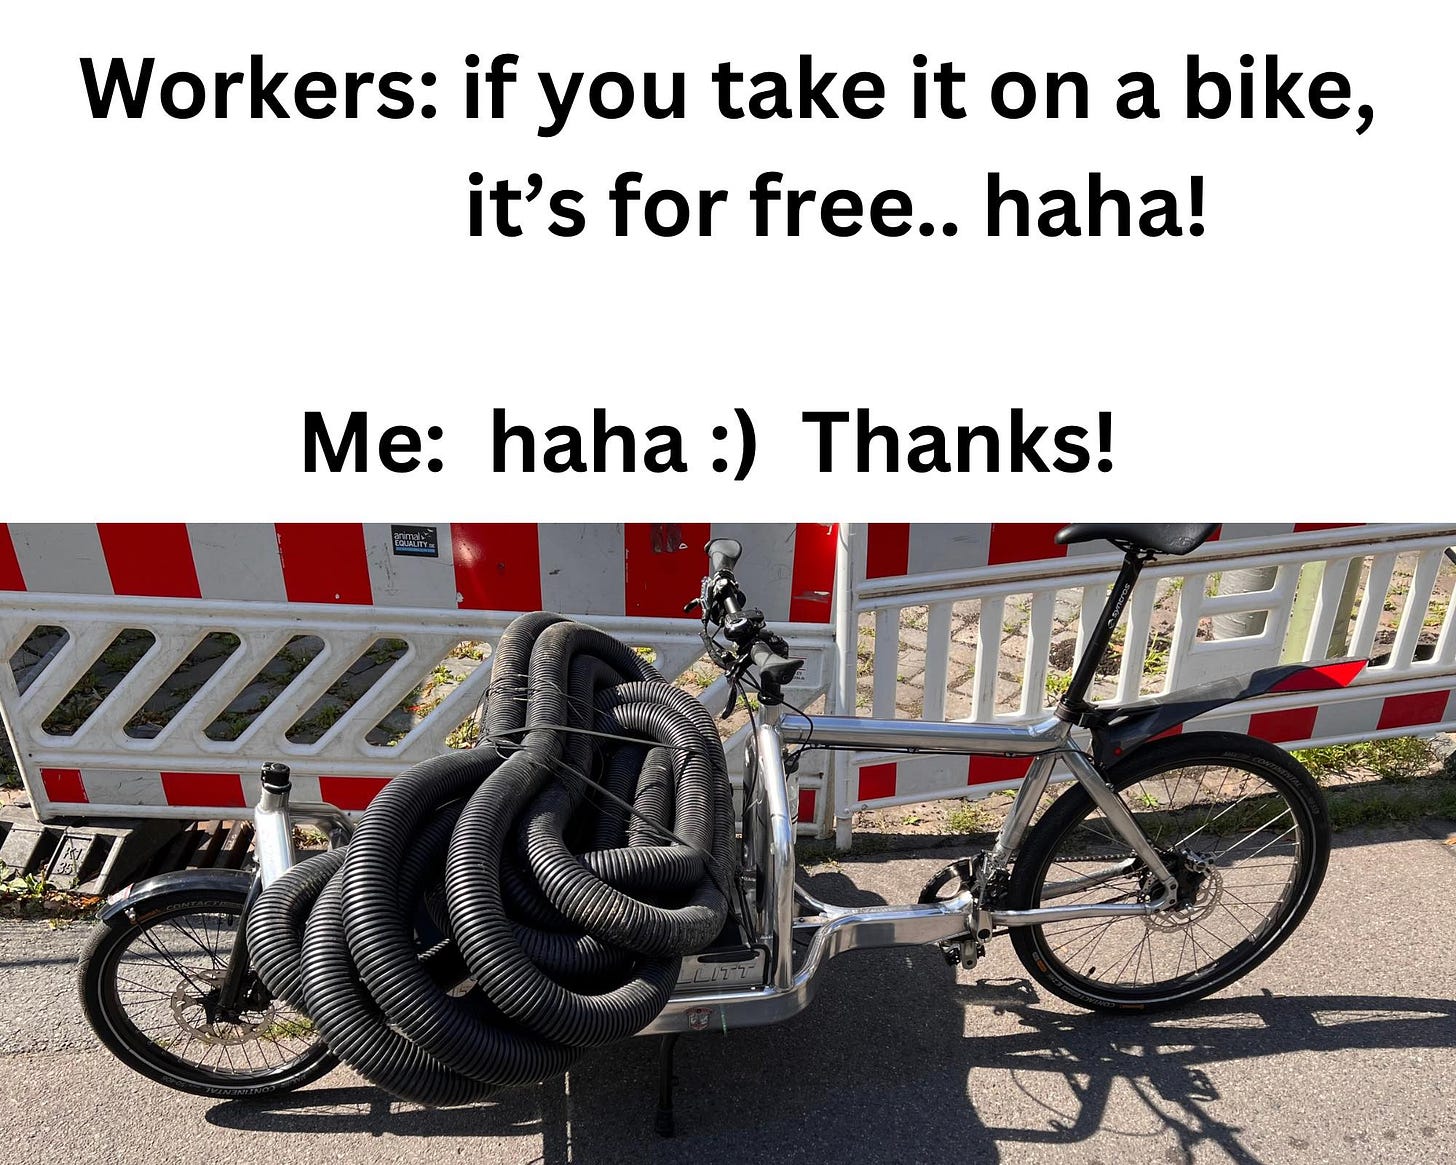 Peut être une image de scooter, vélo et texte qui dit ’Workers: if you take it on a bike, it's for free.. haha! Me: haha:) Thanks! C’